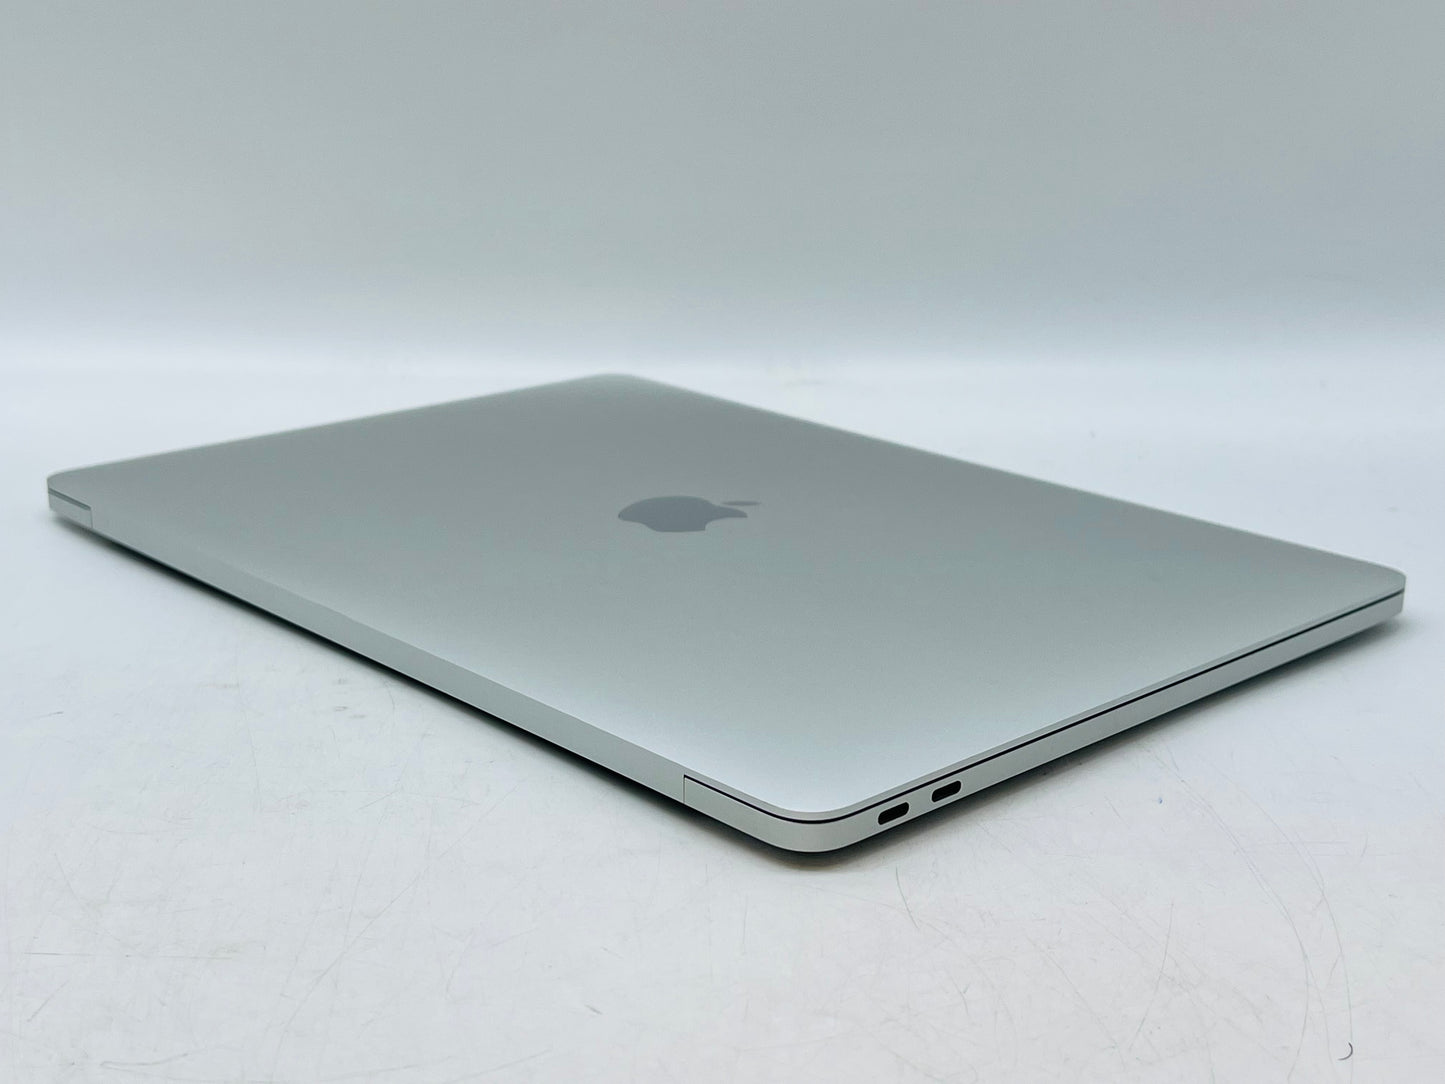 Apple 2017 13 in MacBook Pro Retina 2.5GHz Dual-Core i7 16GB 512GB SSD IIPG640